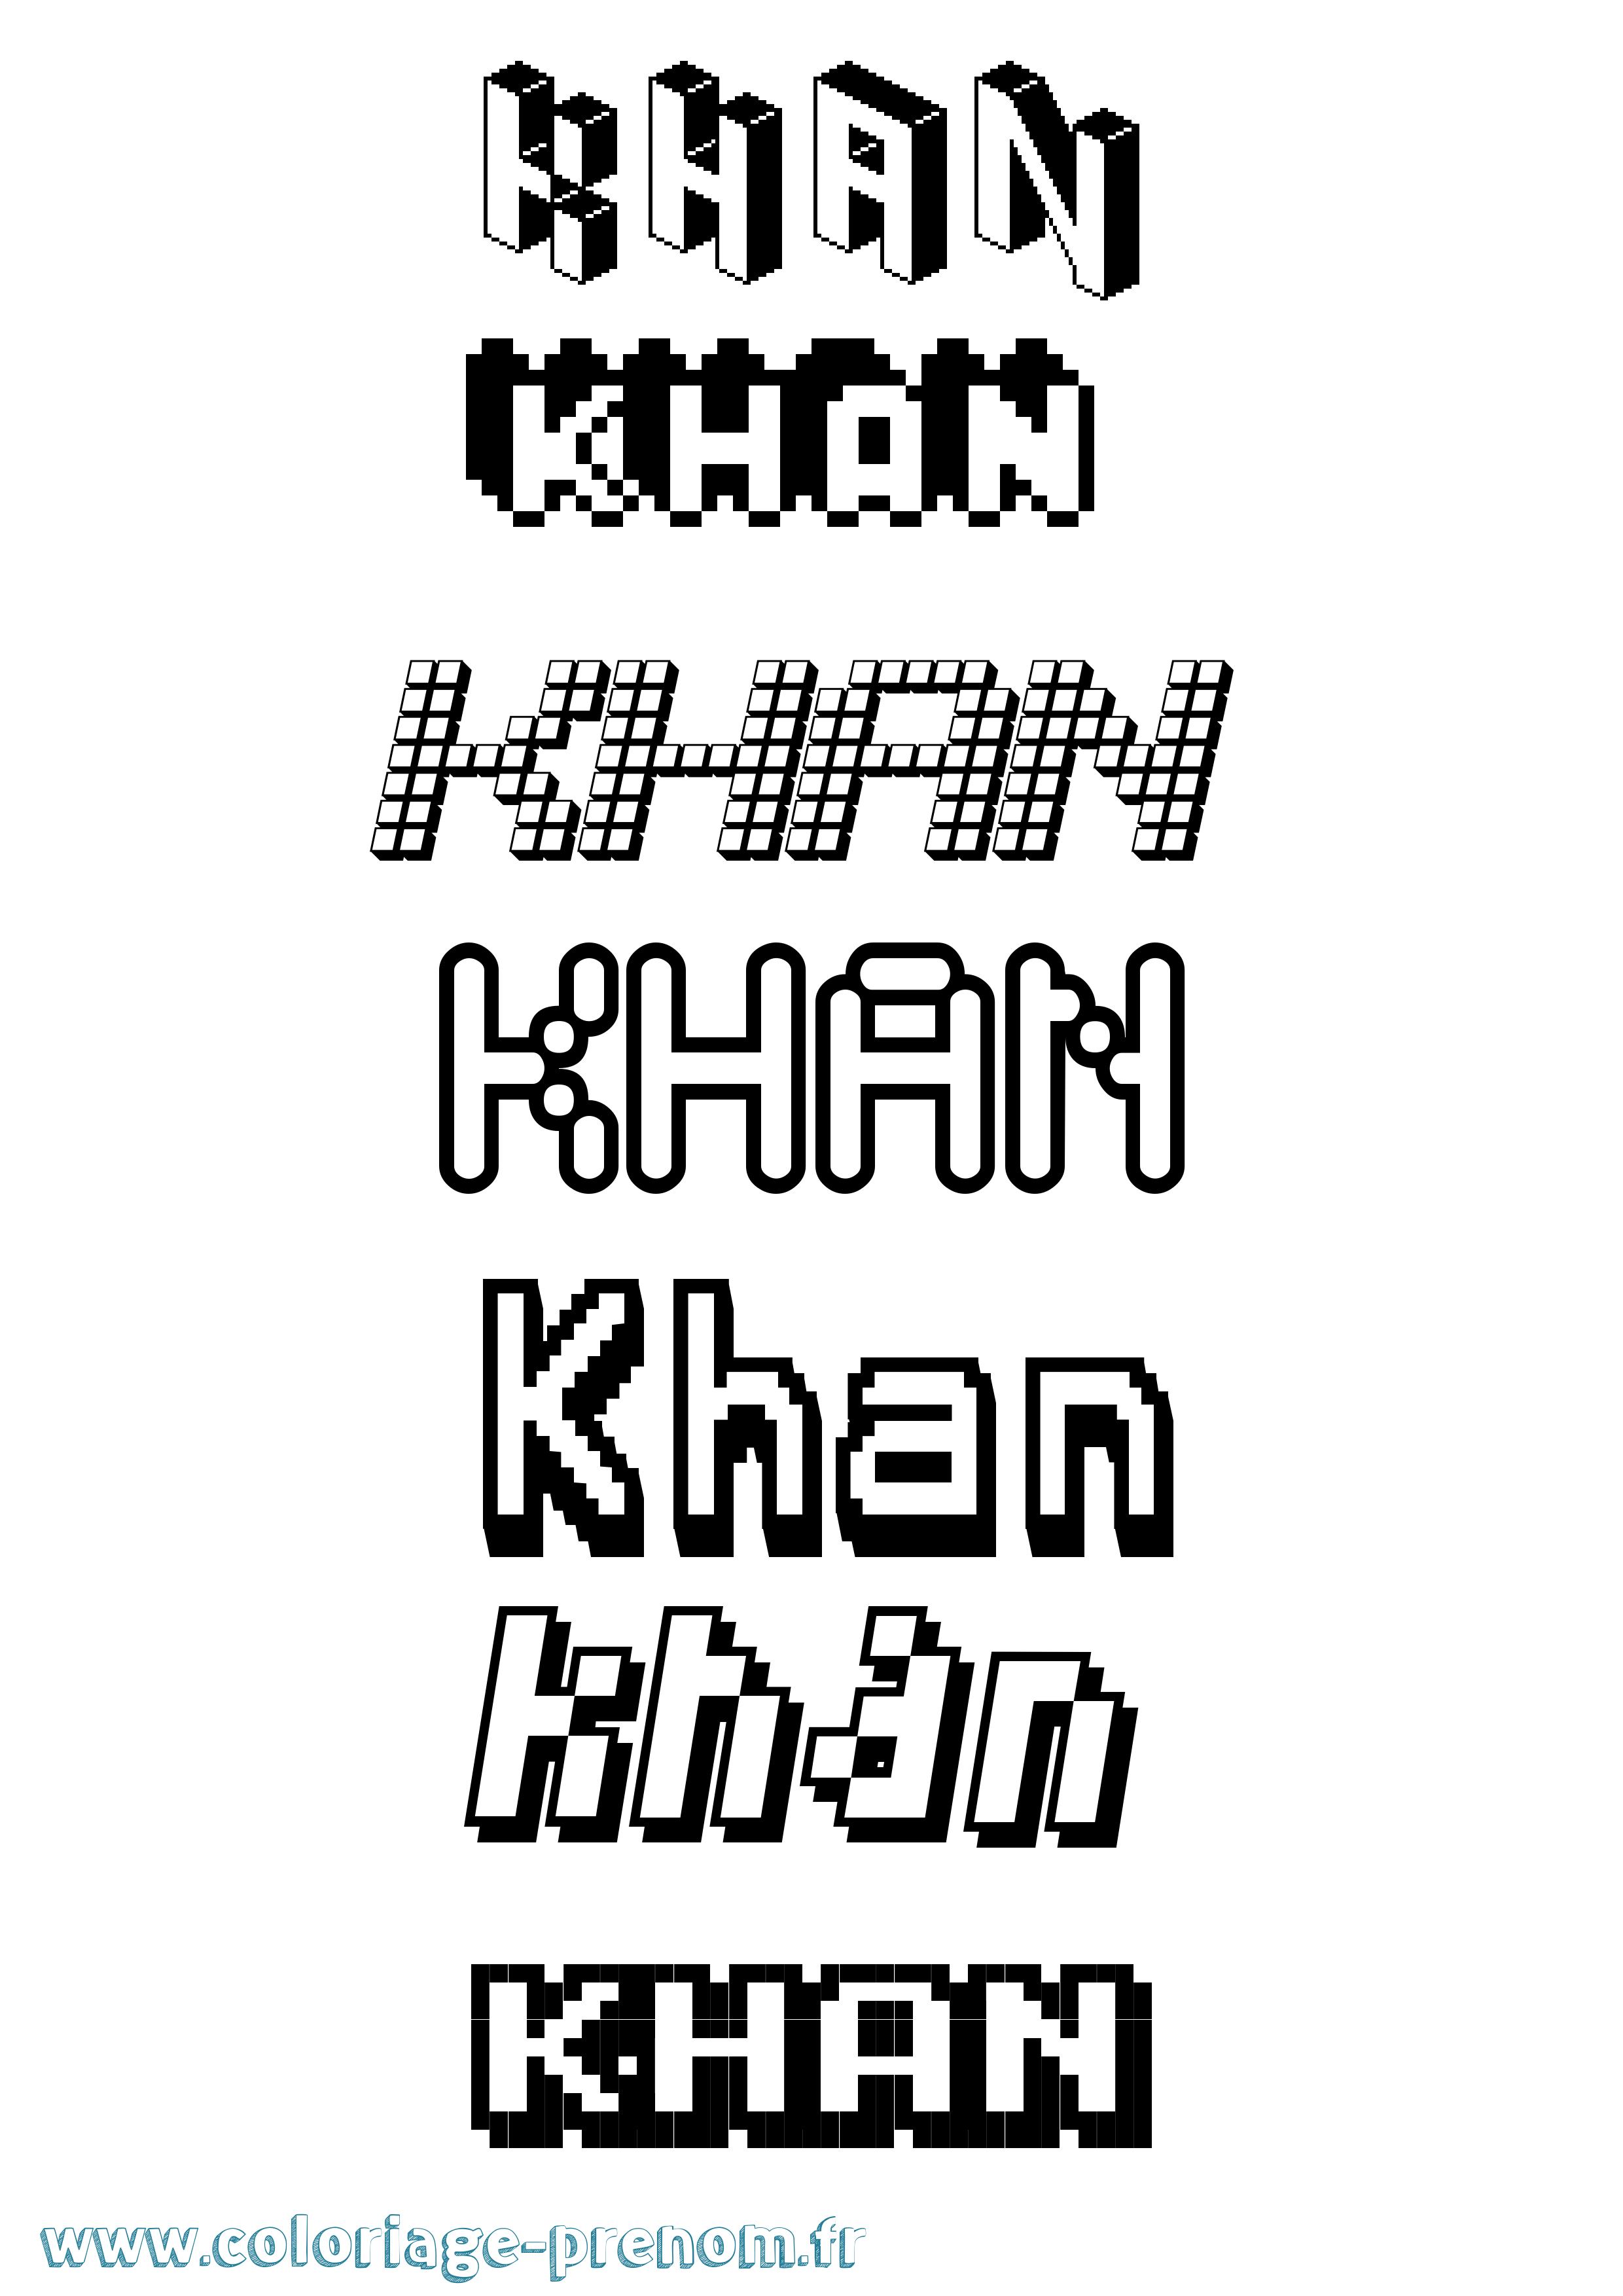 Coloriage prénom Khan Pixel